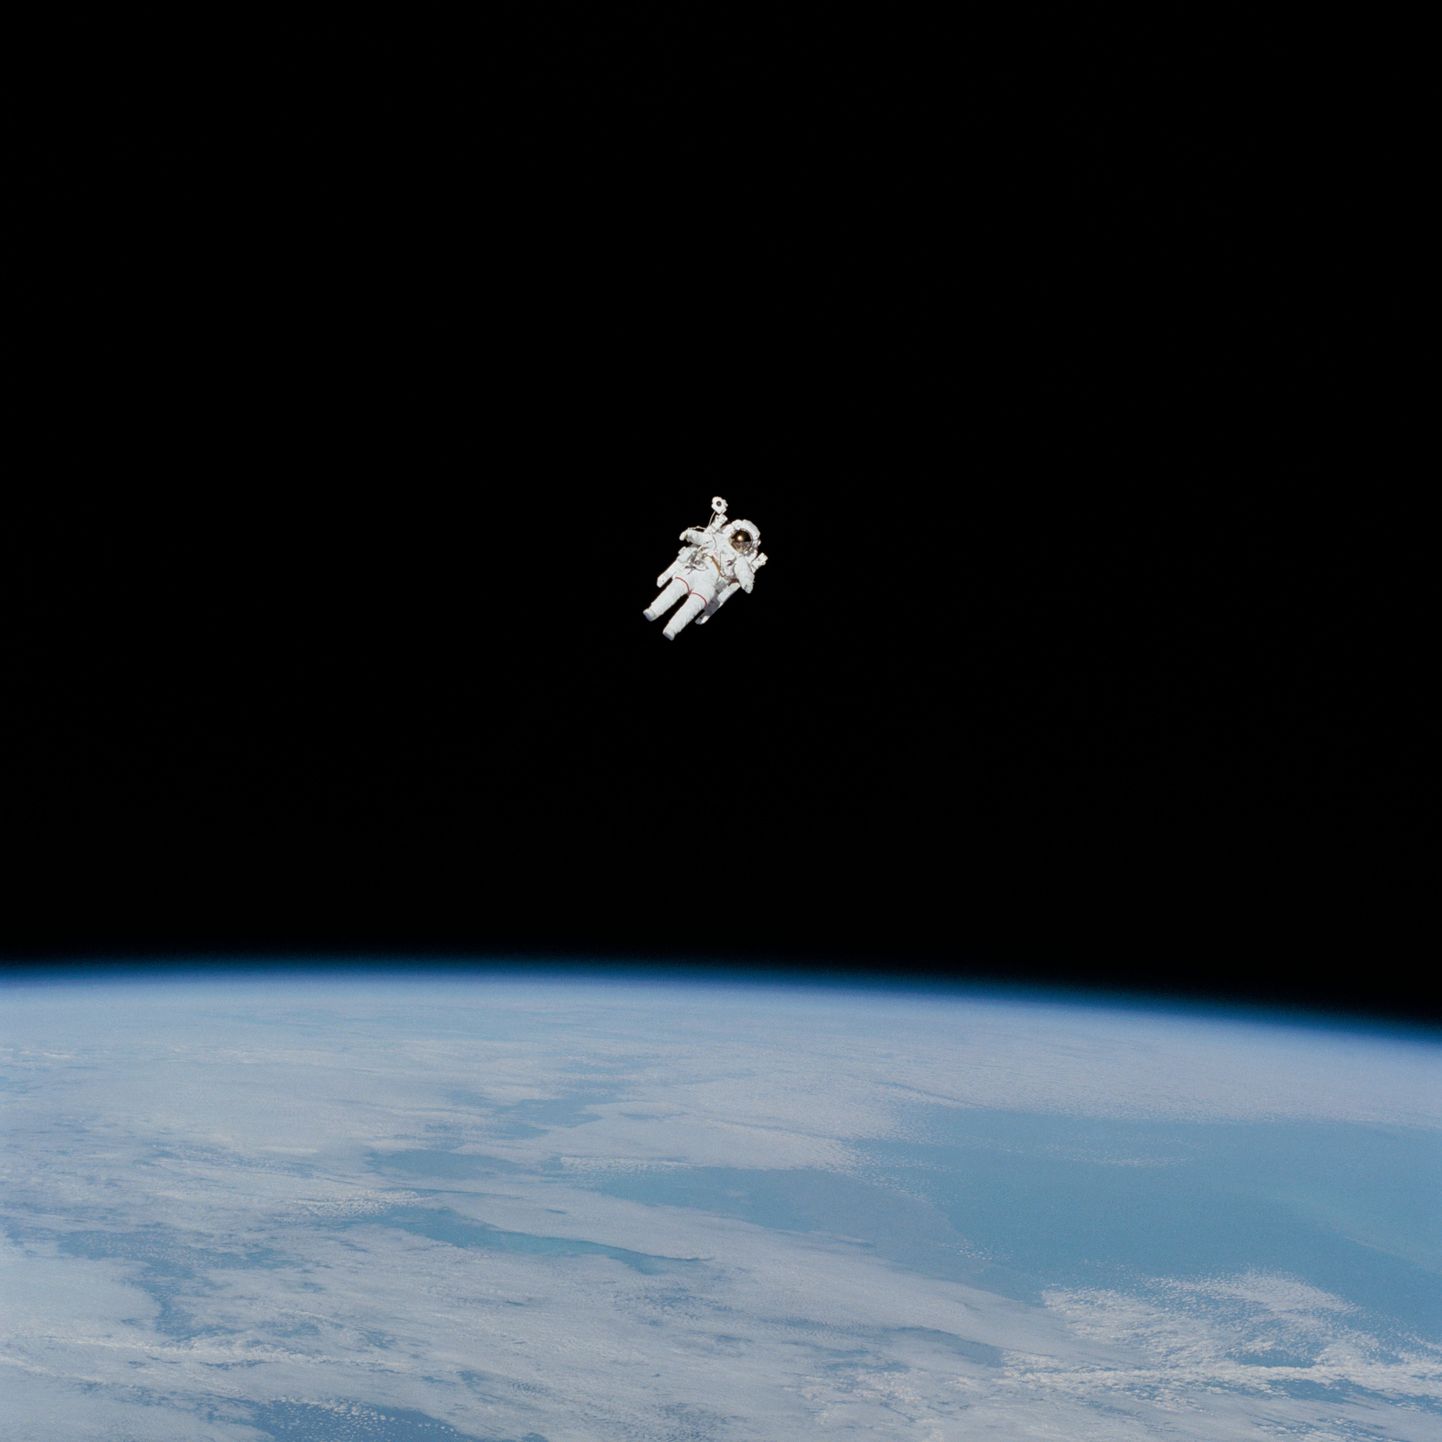 Astronauts atklātā kosmosā